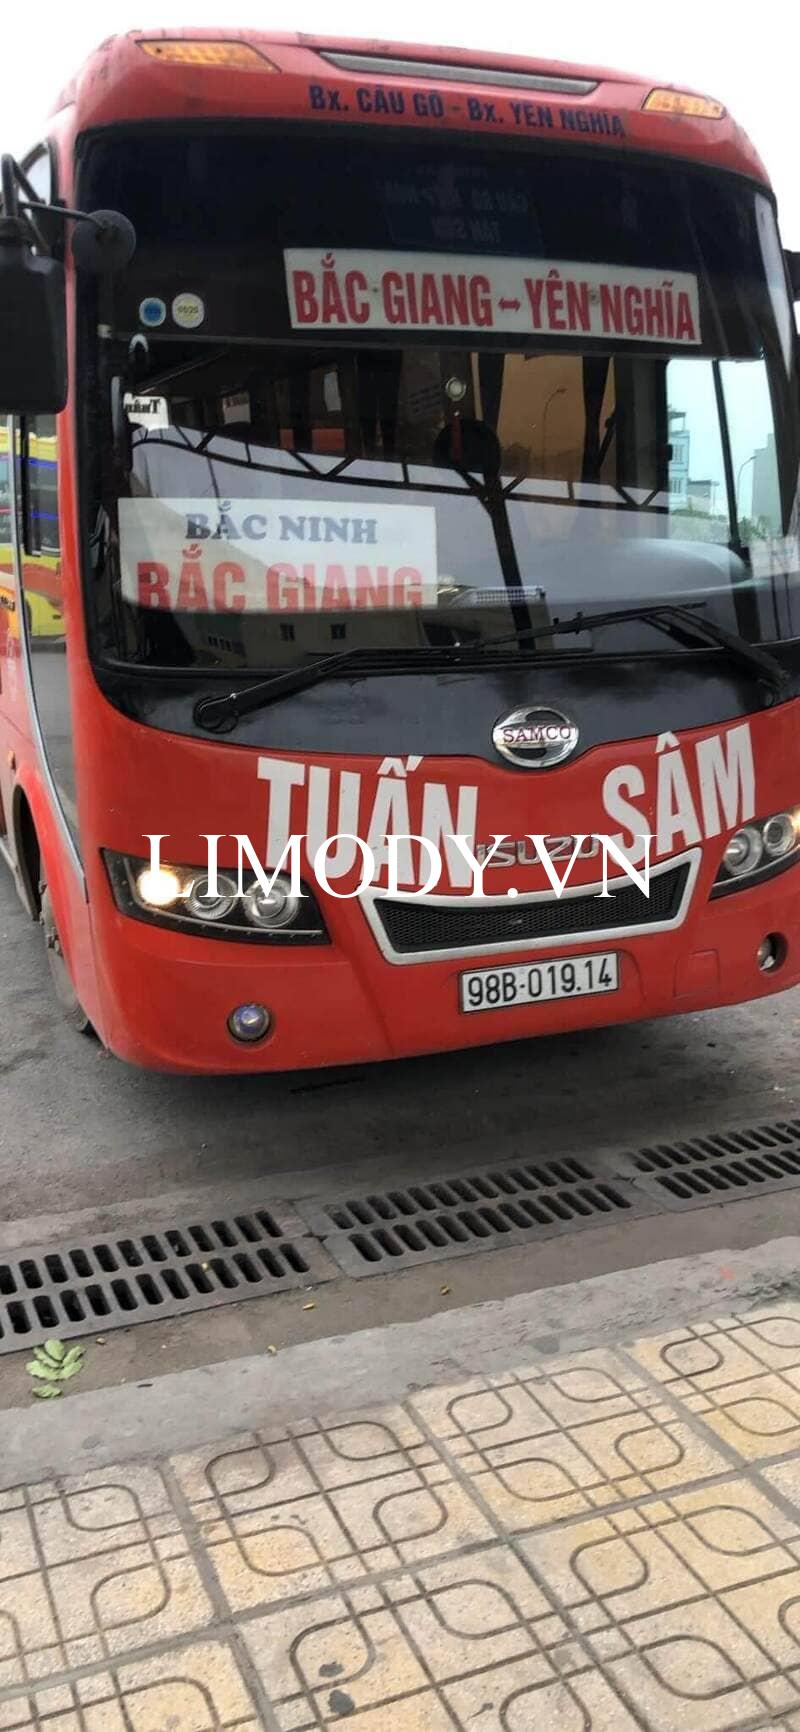 Top 3 Nhà xe Yên Nghĩa Bắc Ninh Quế Võ đưa đón tận bến xe